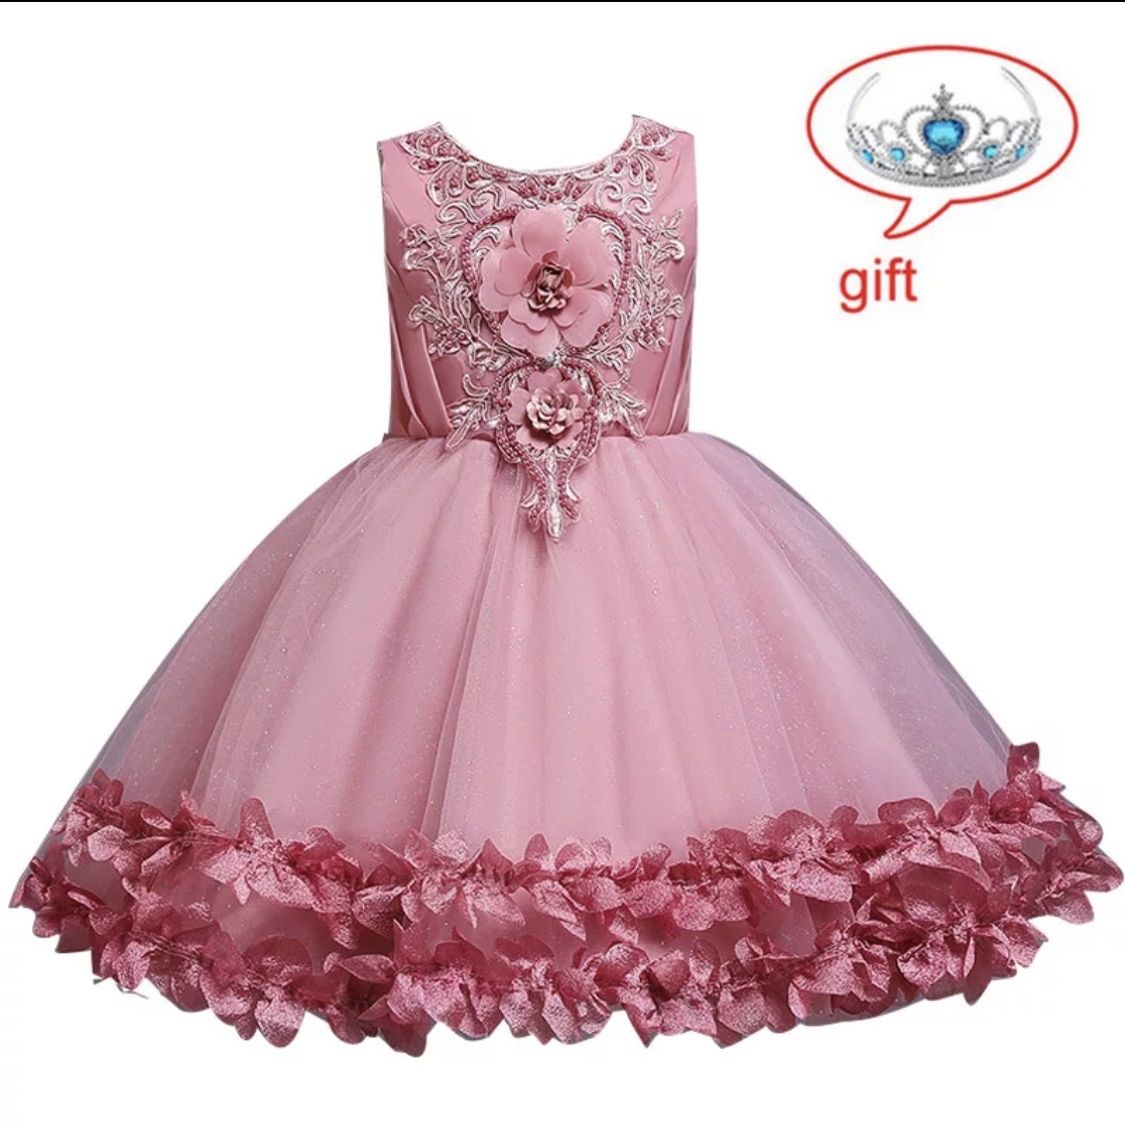 Brand new, Elegant Children Princess Dress For Girls